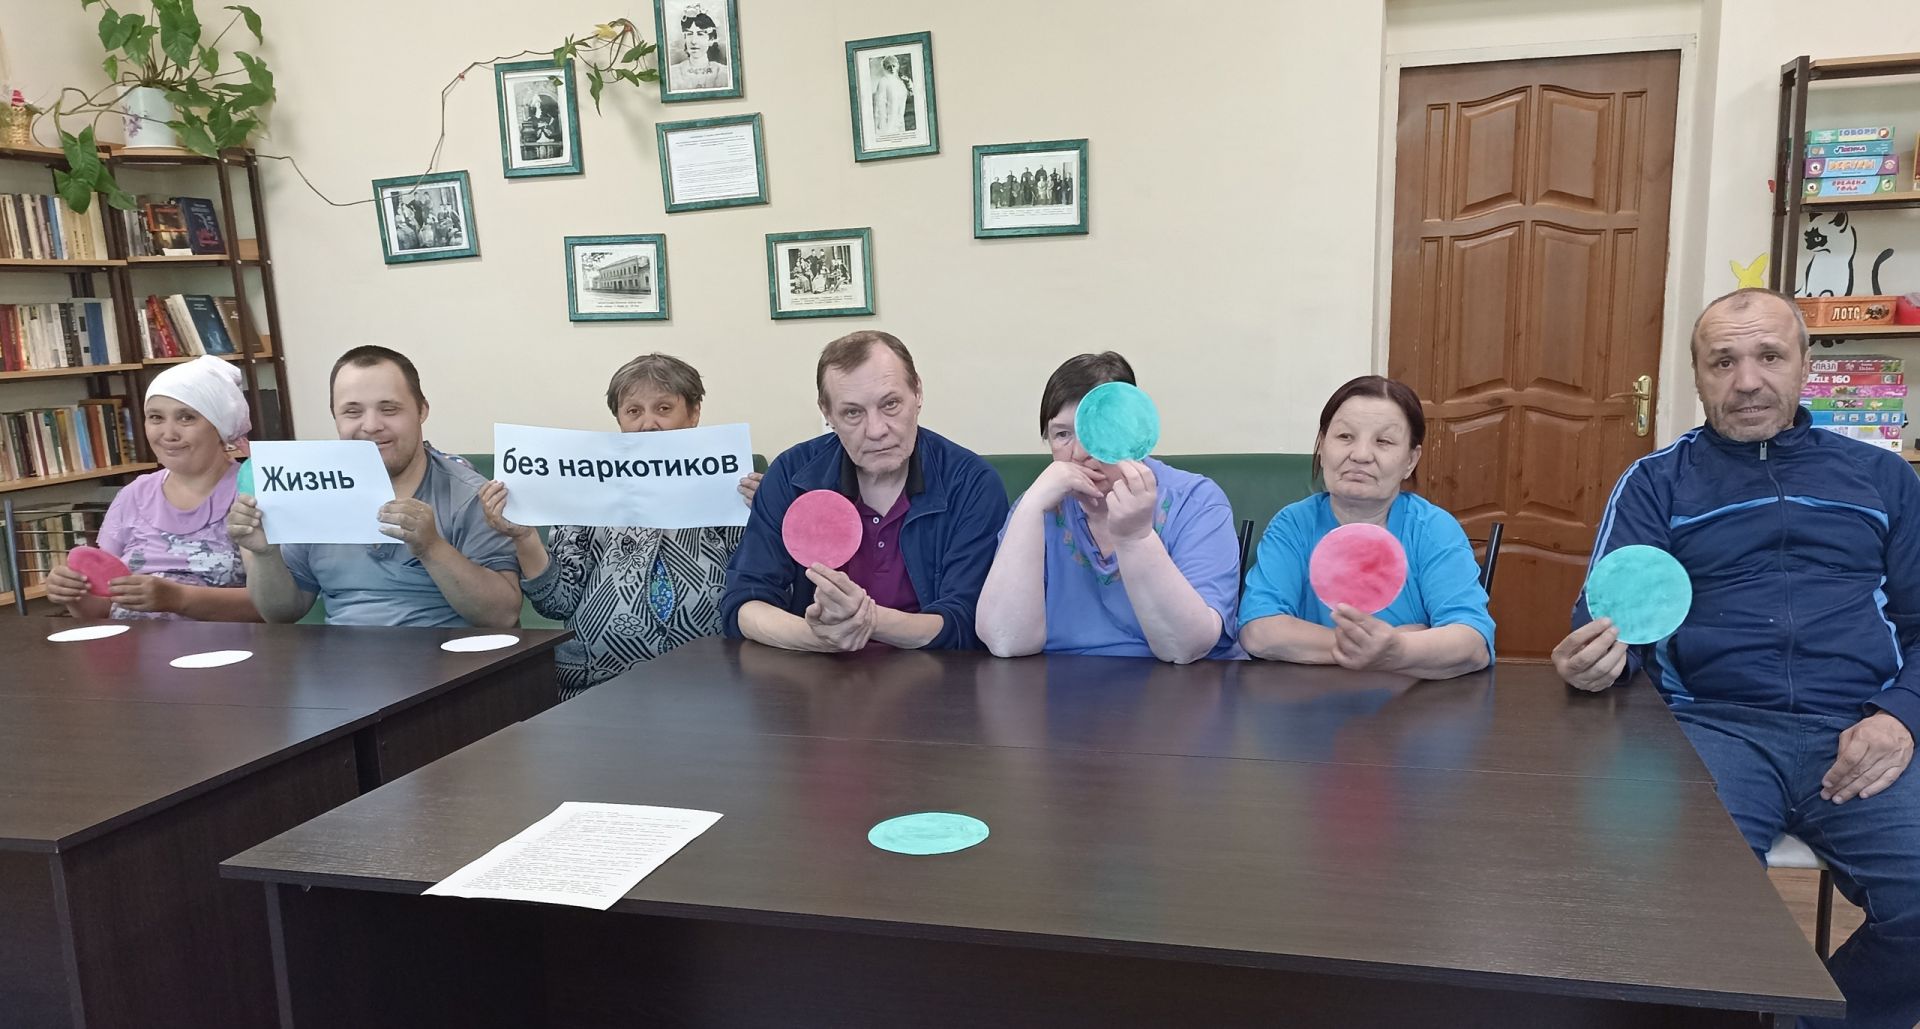 «Жизнь без наркотиков»: в чистопольском доме-интернате провели видеолекторий